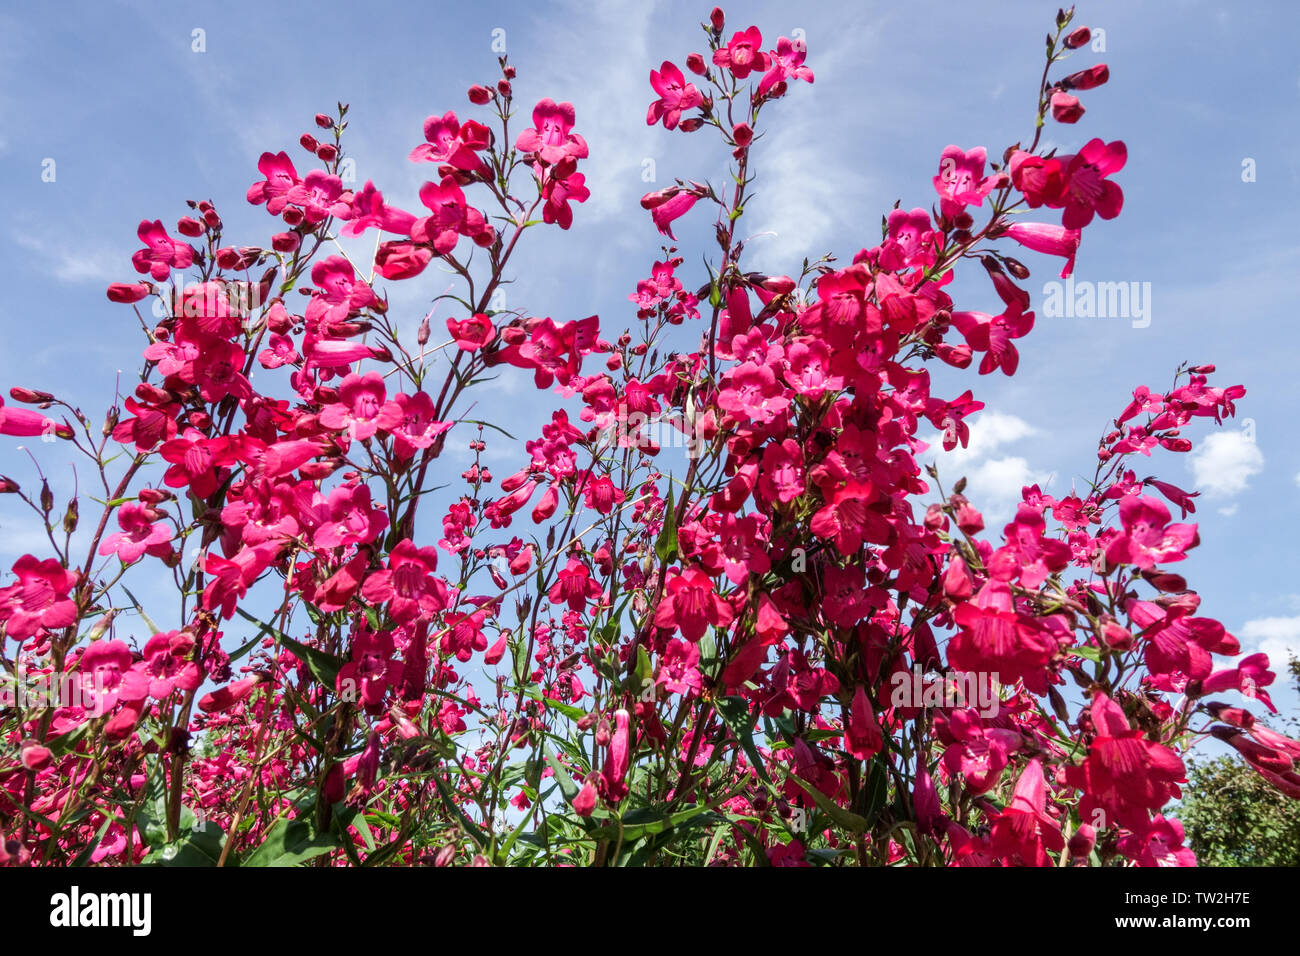 Roter Penstemon Granat Rote Blumen blühende Staudenblüte Penstemon Andenken an Friedrich Hahn Gartenblumen blühendes Rot blühend viele Blumen dekorativ Stockfoto